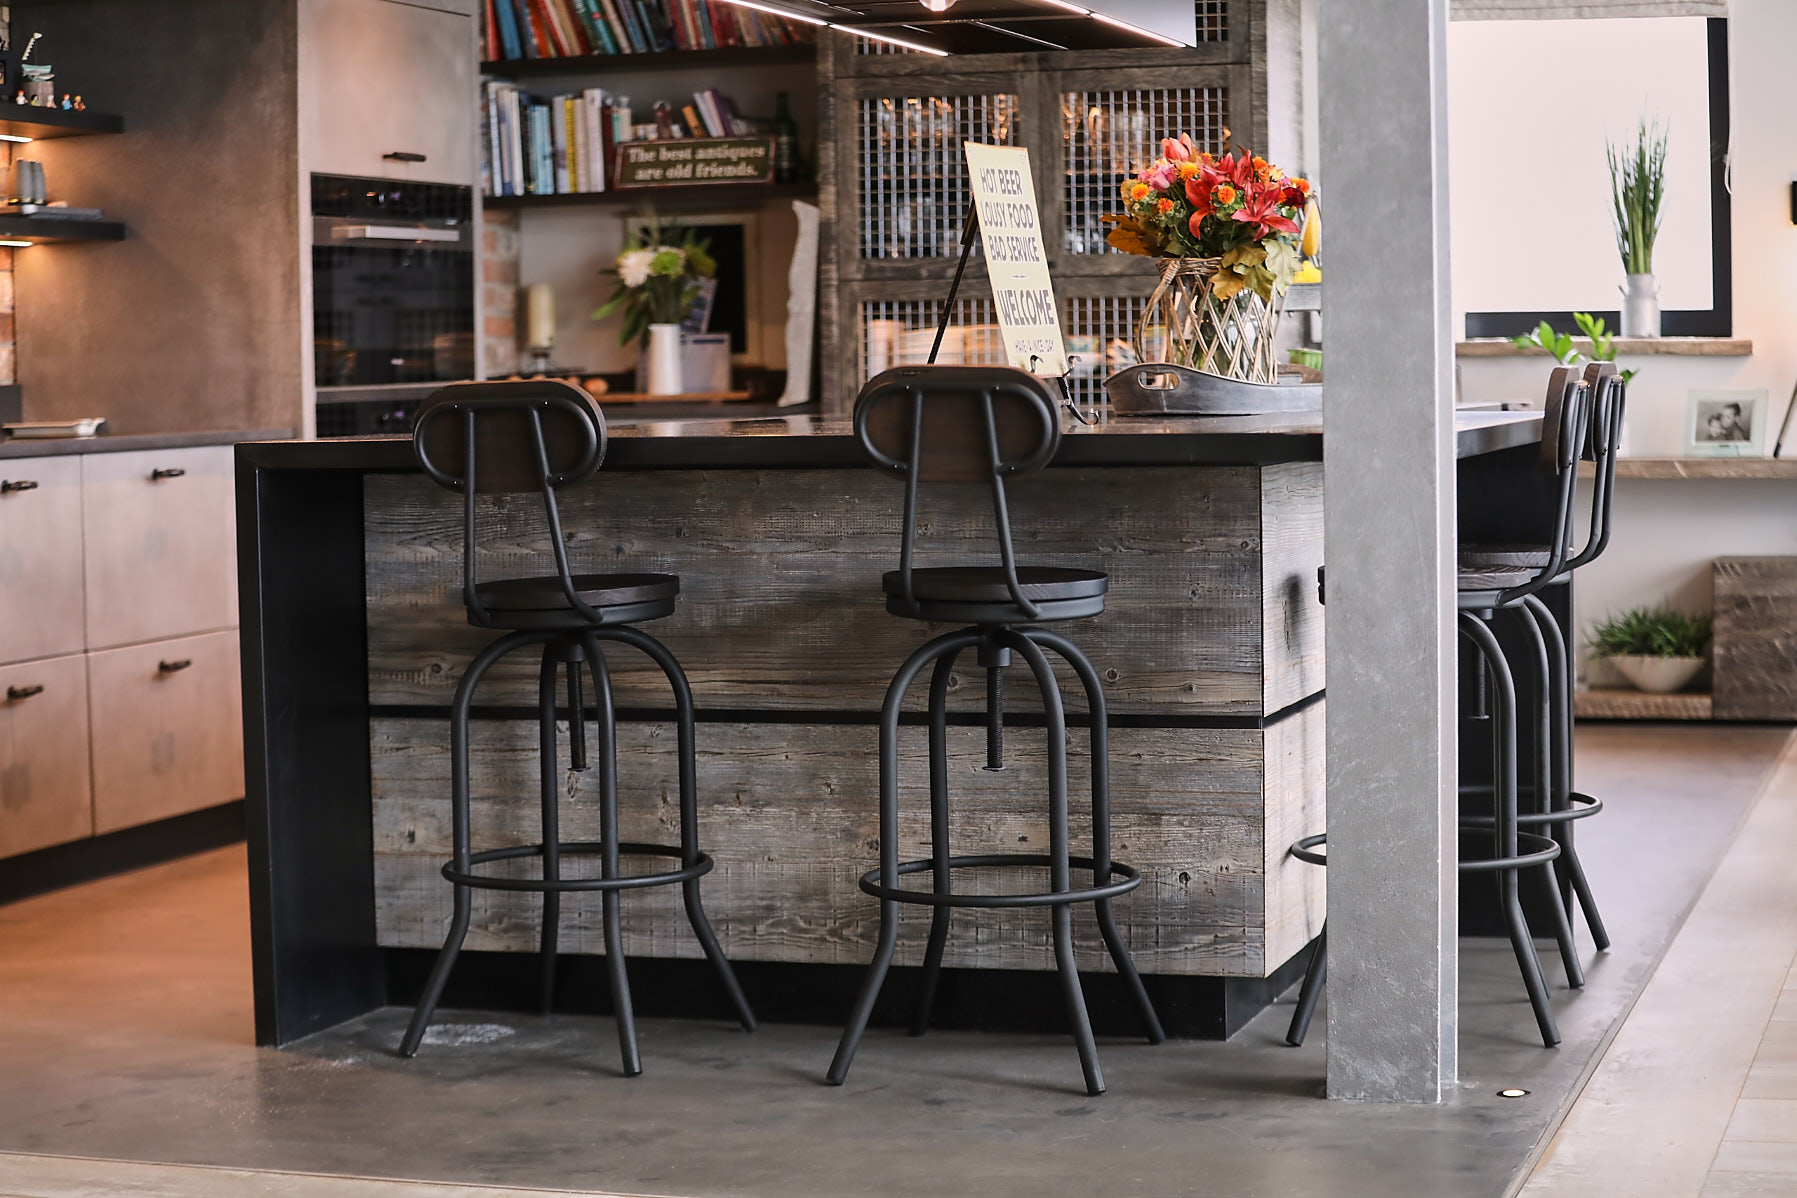 Metal bar stools sit under zinc worktop on kitchen island